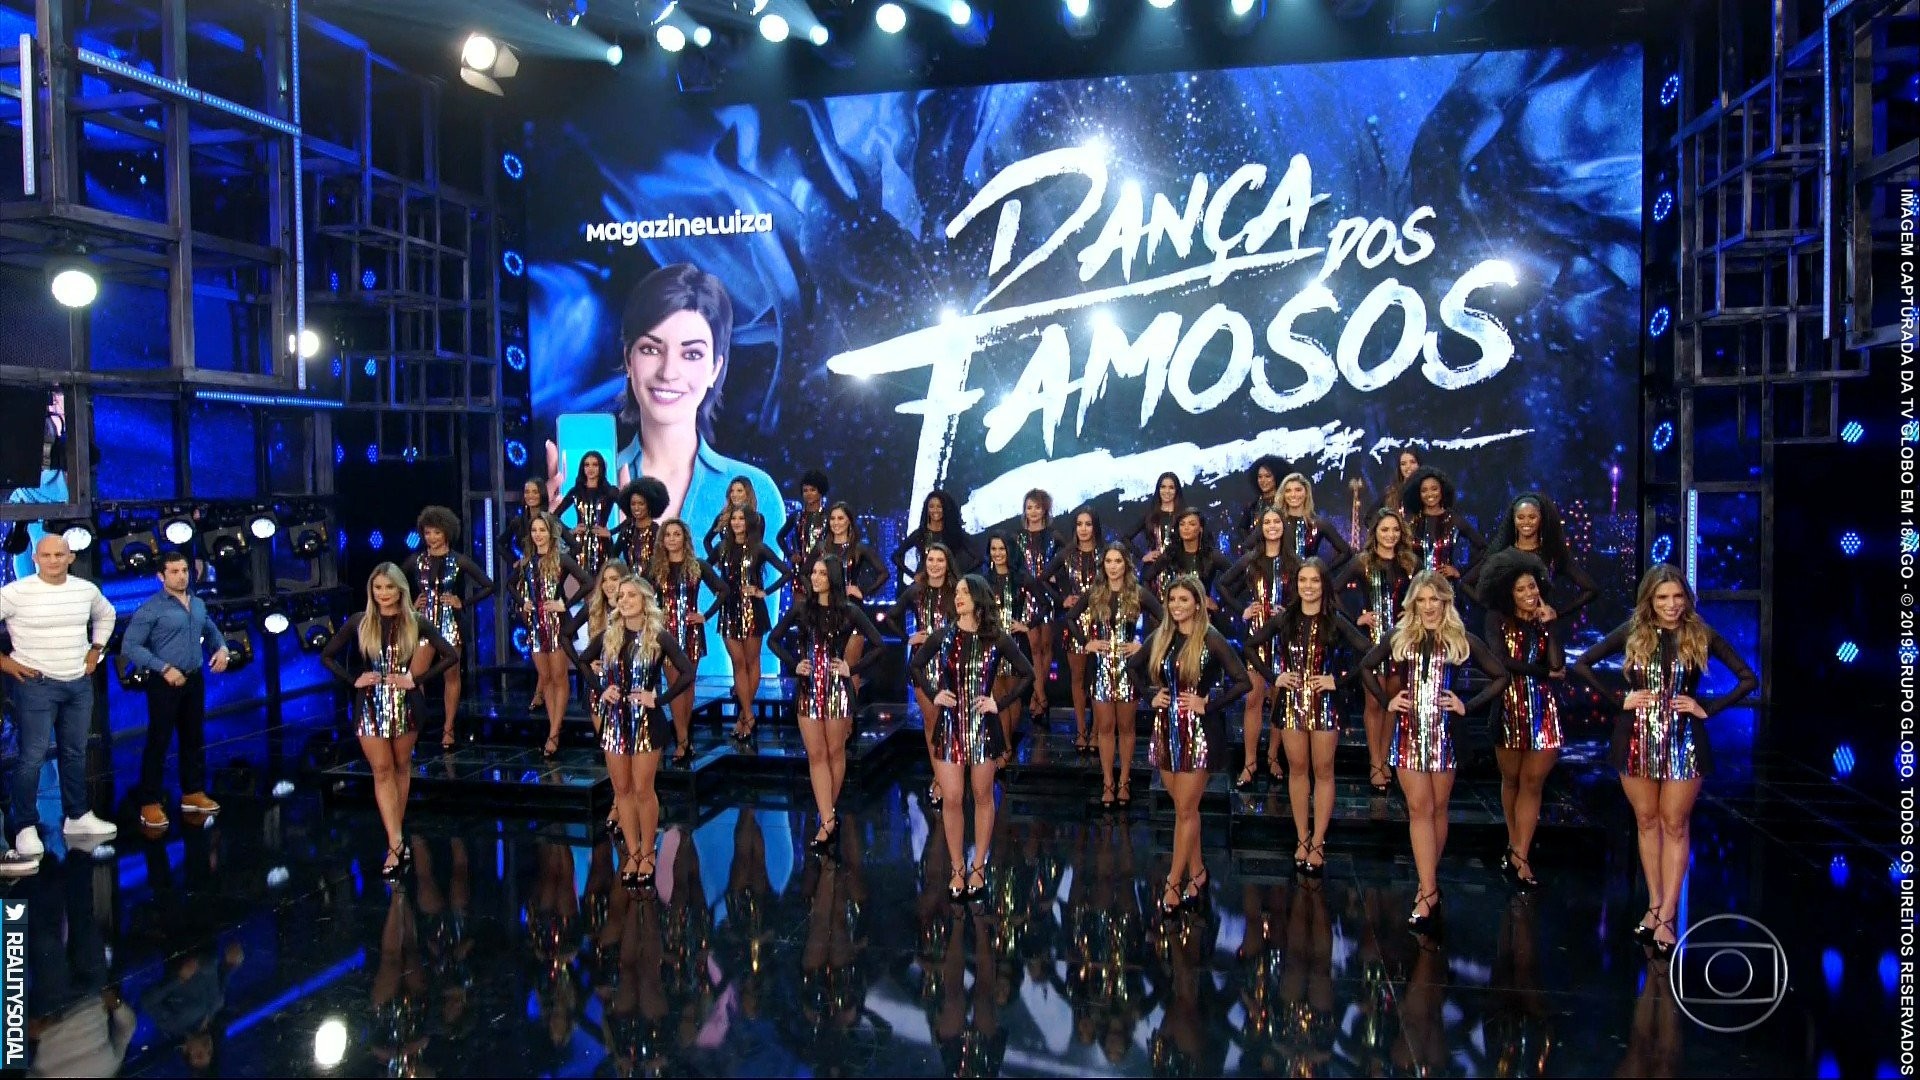 Dança dos Famosos (Foto: Reprodução/TV Globo)